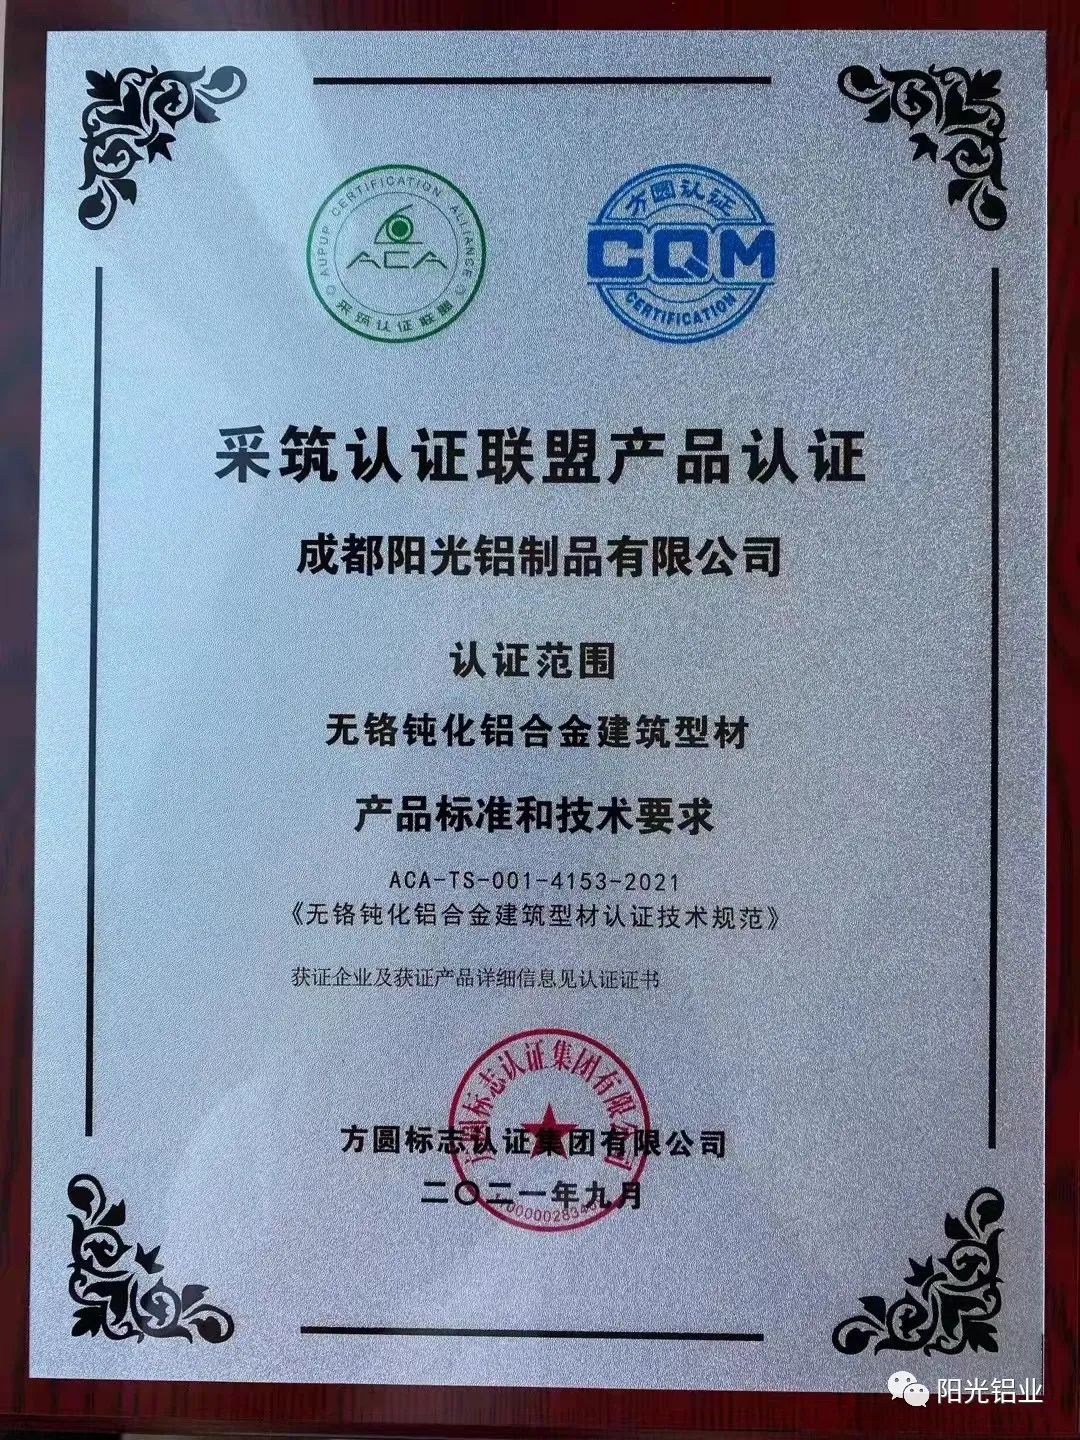 成都阳光铝业荣获采筑认证联盟首批ACA绿色产品认证